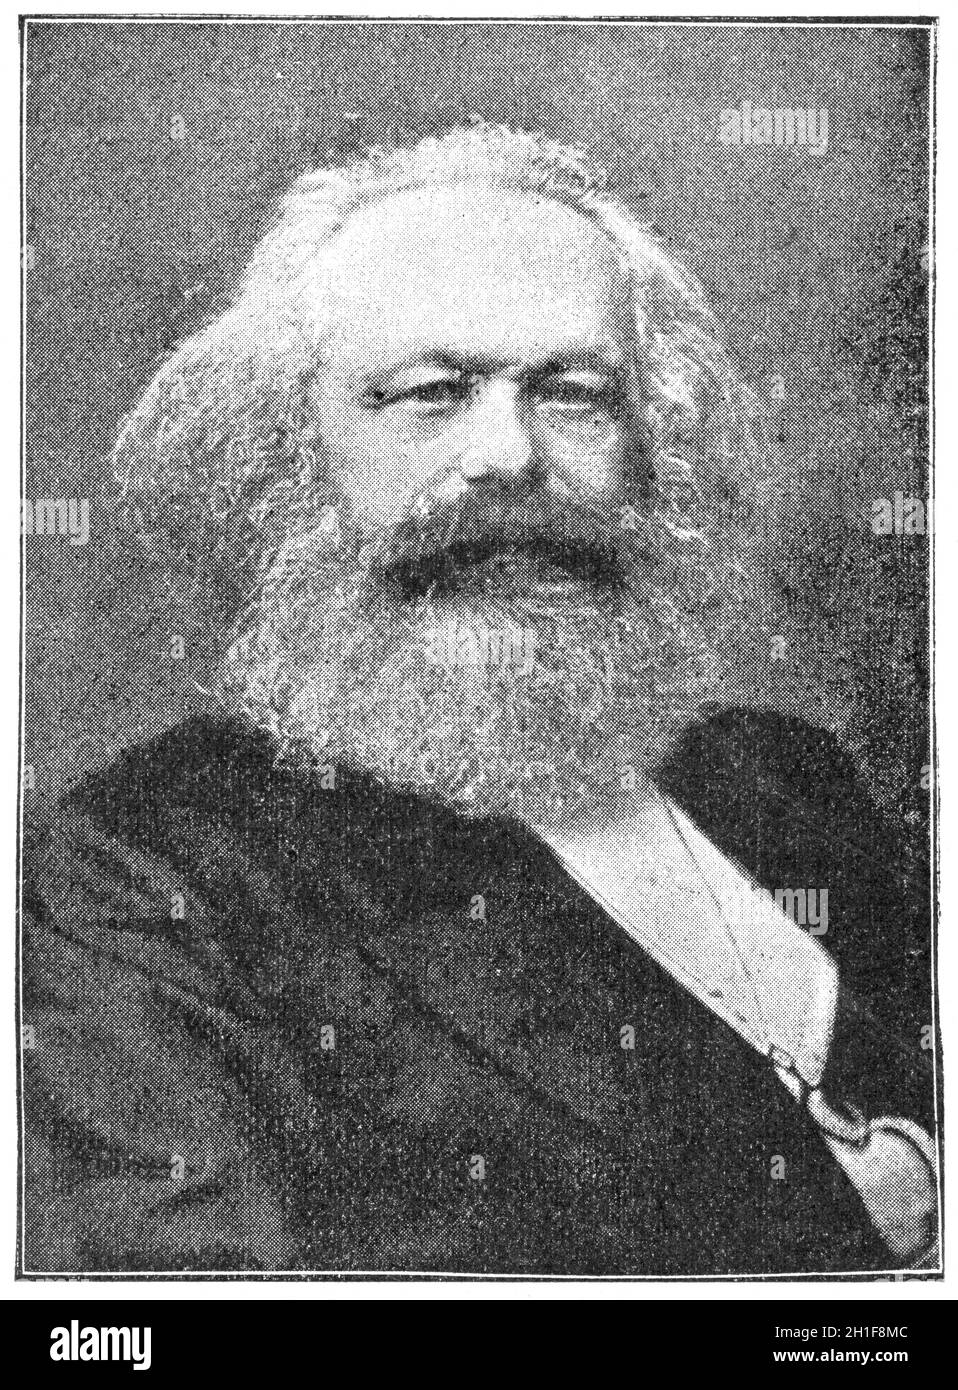 Porträt von Karl Marx - ein deutscher Philosoph, Ökonom, Historiker, Soziologe, Politiktheoretiker, Journalist und Sozialrevolutionär. Illustrat Stockfoto